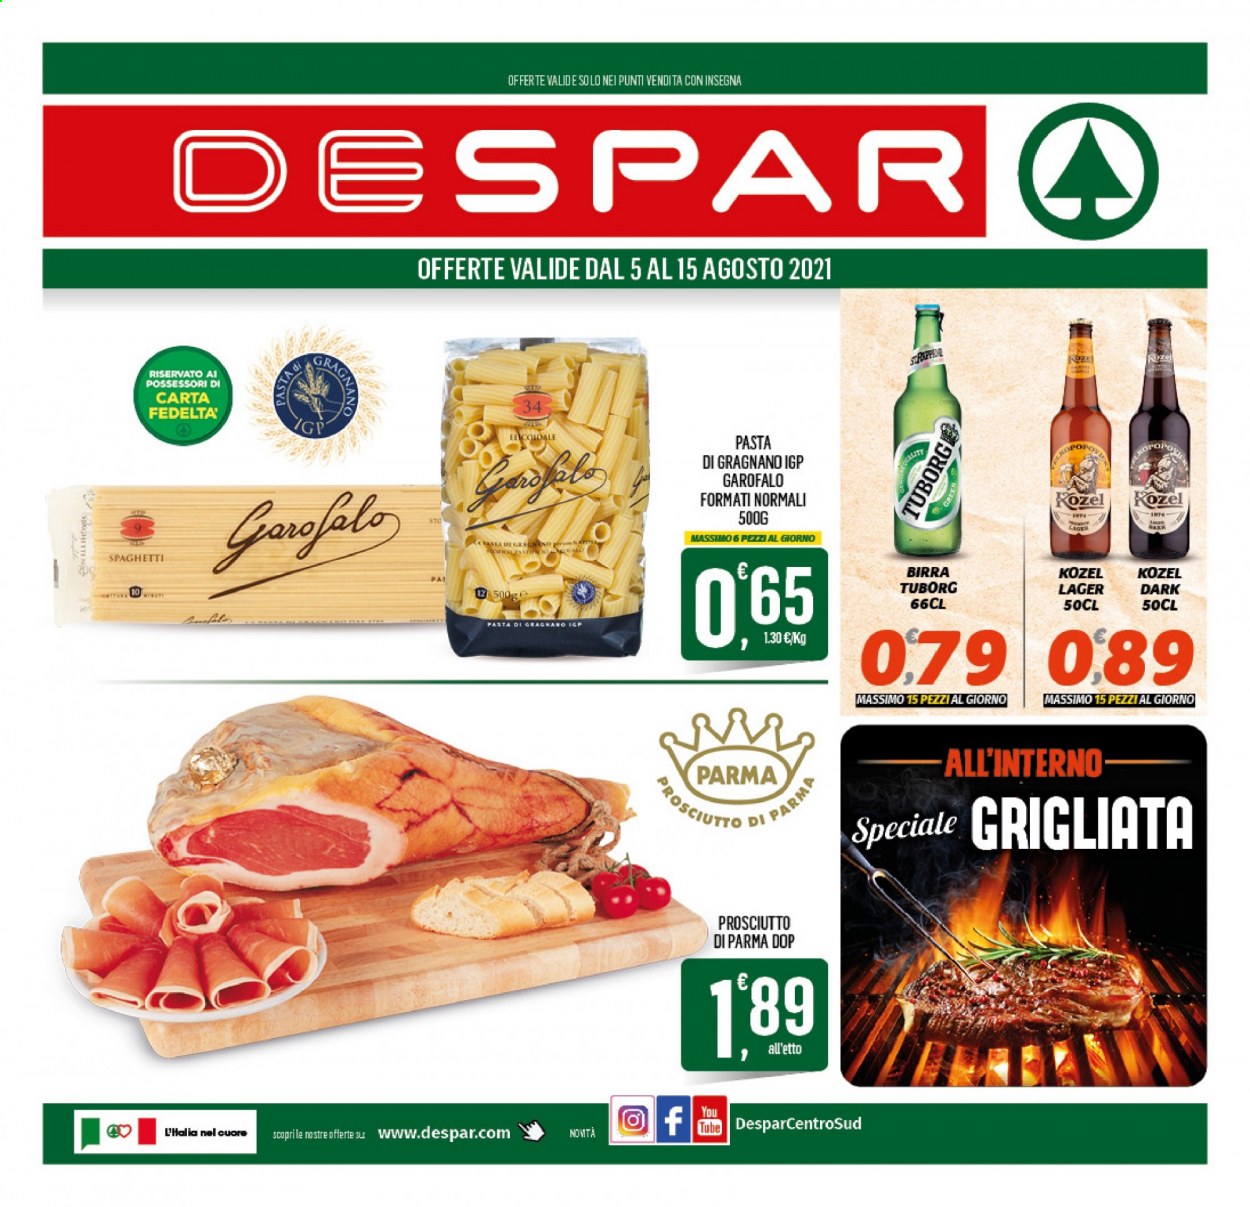 thumbnail - Volantino Despar - 5/8/2021 - 15/8/2021 - Prodotti in offerta - birra, Tuborg, birra tipo lager, Kozel, prosciutto, Prosciutto di Parma, Garofalo, spaghetti, pasta. Pagina 1.